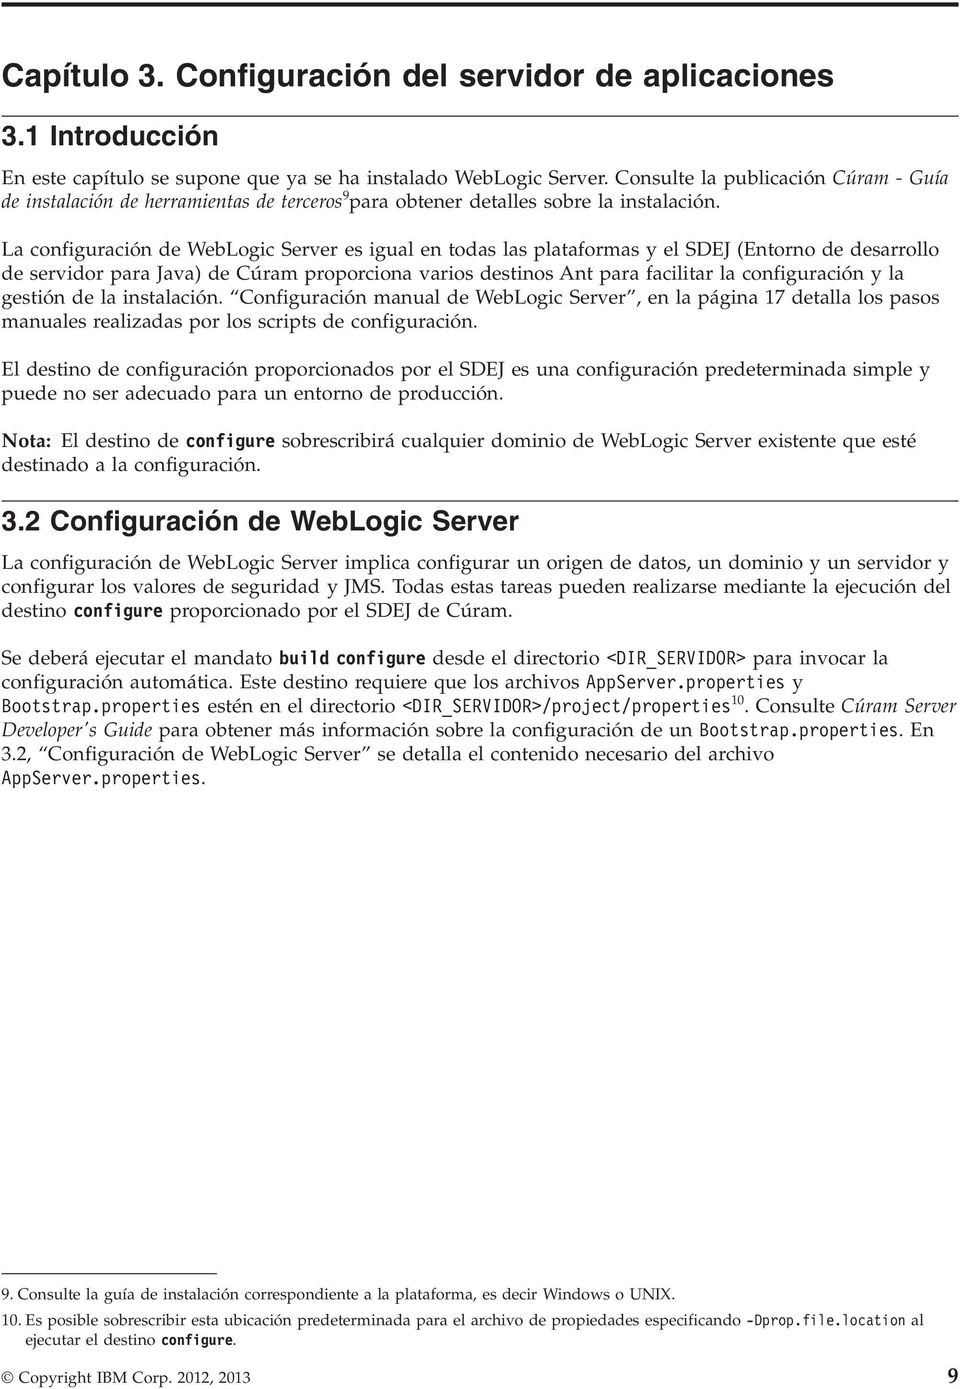 La configuración de WebLogic Server es igual en todas las plataformas y el SDEJ (Entorno de desarrollo de servidor para Java) de Cúram proporciona varios destinos Ant para facilitar la configuración